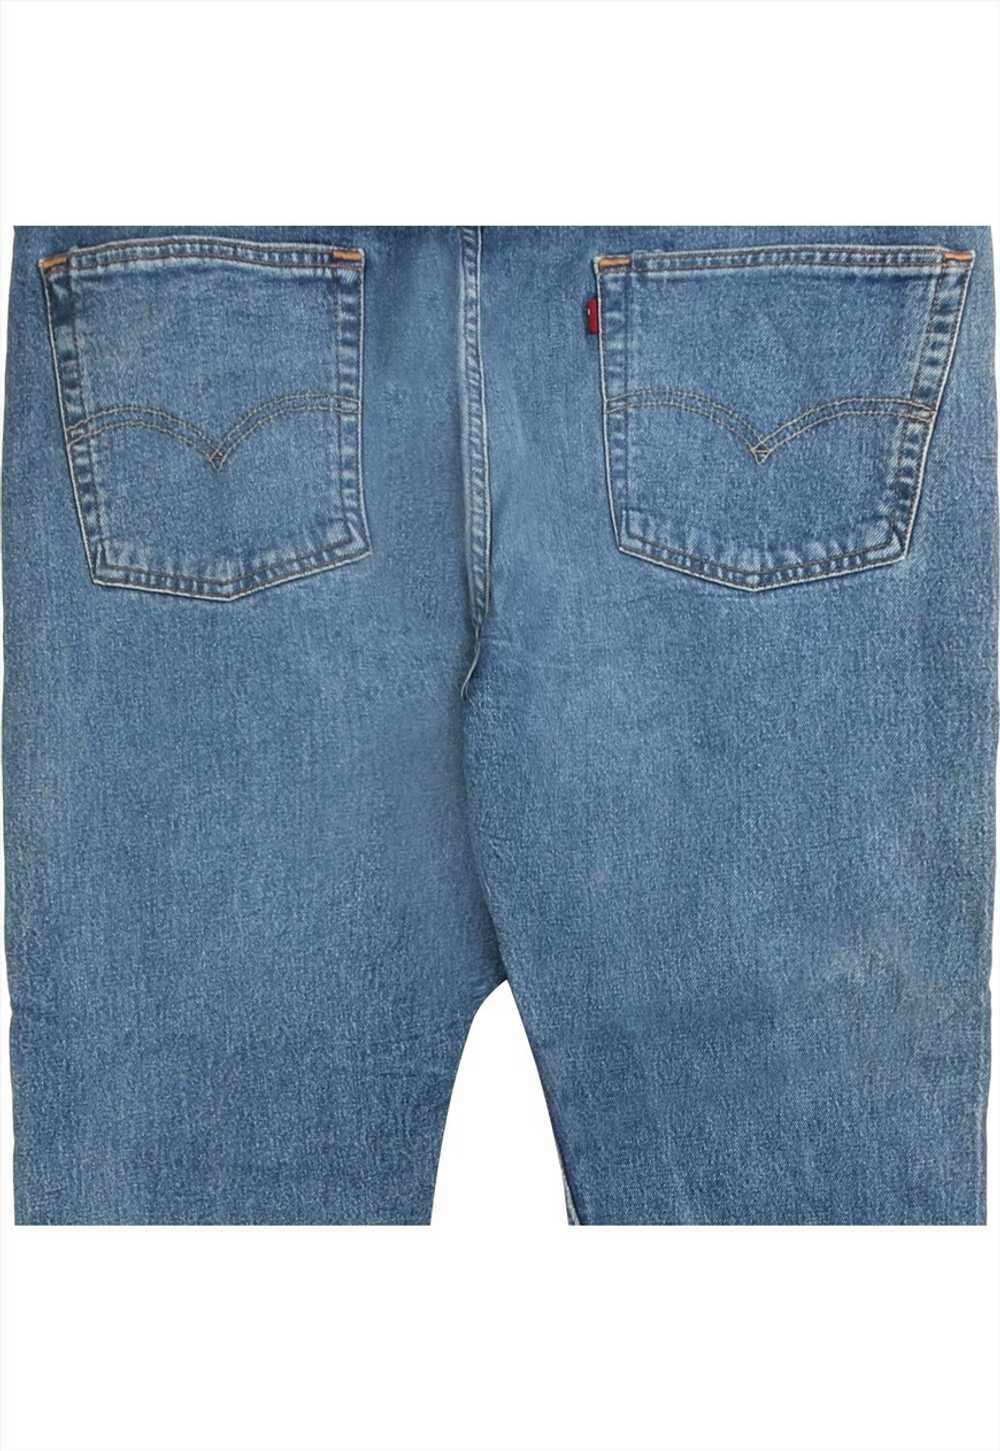 Vintage 90's Levi's Jeans / Pants 510 Denim Slim … - image 3